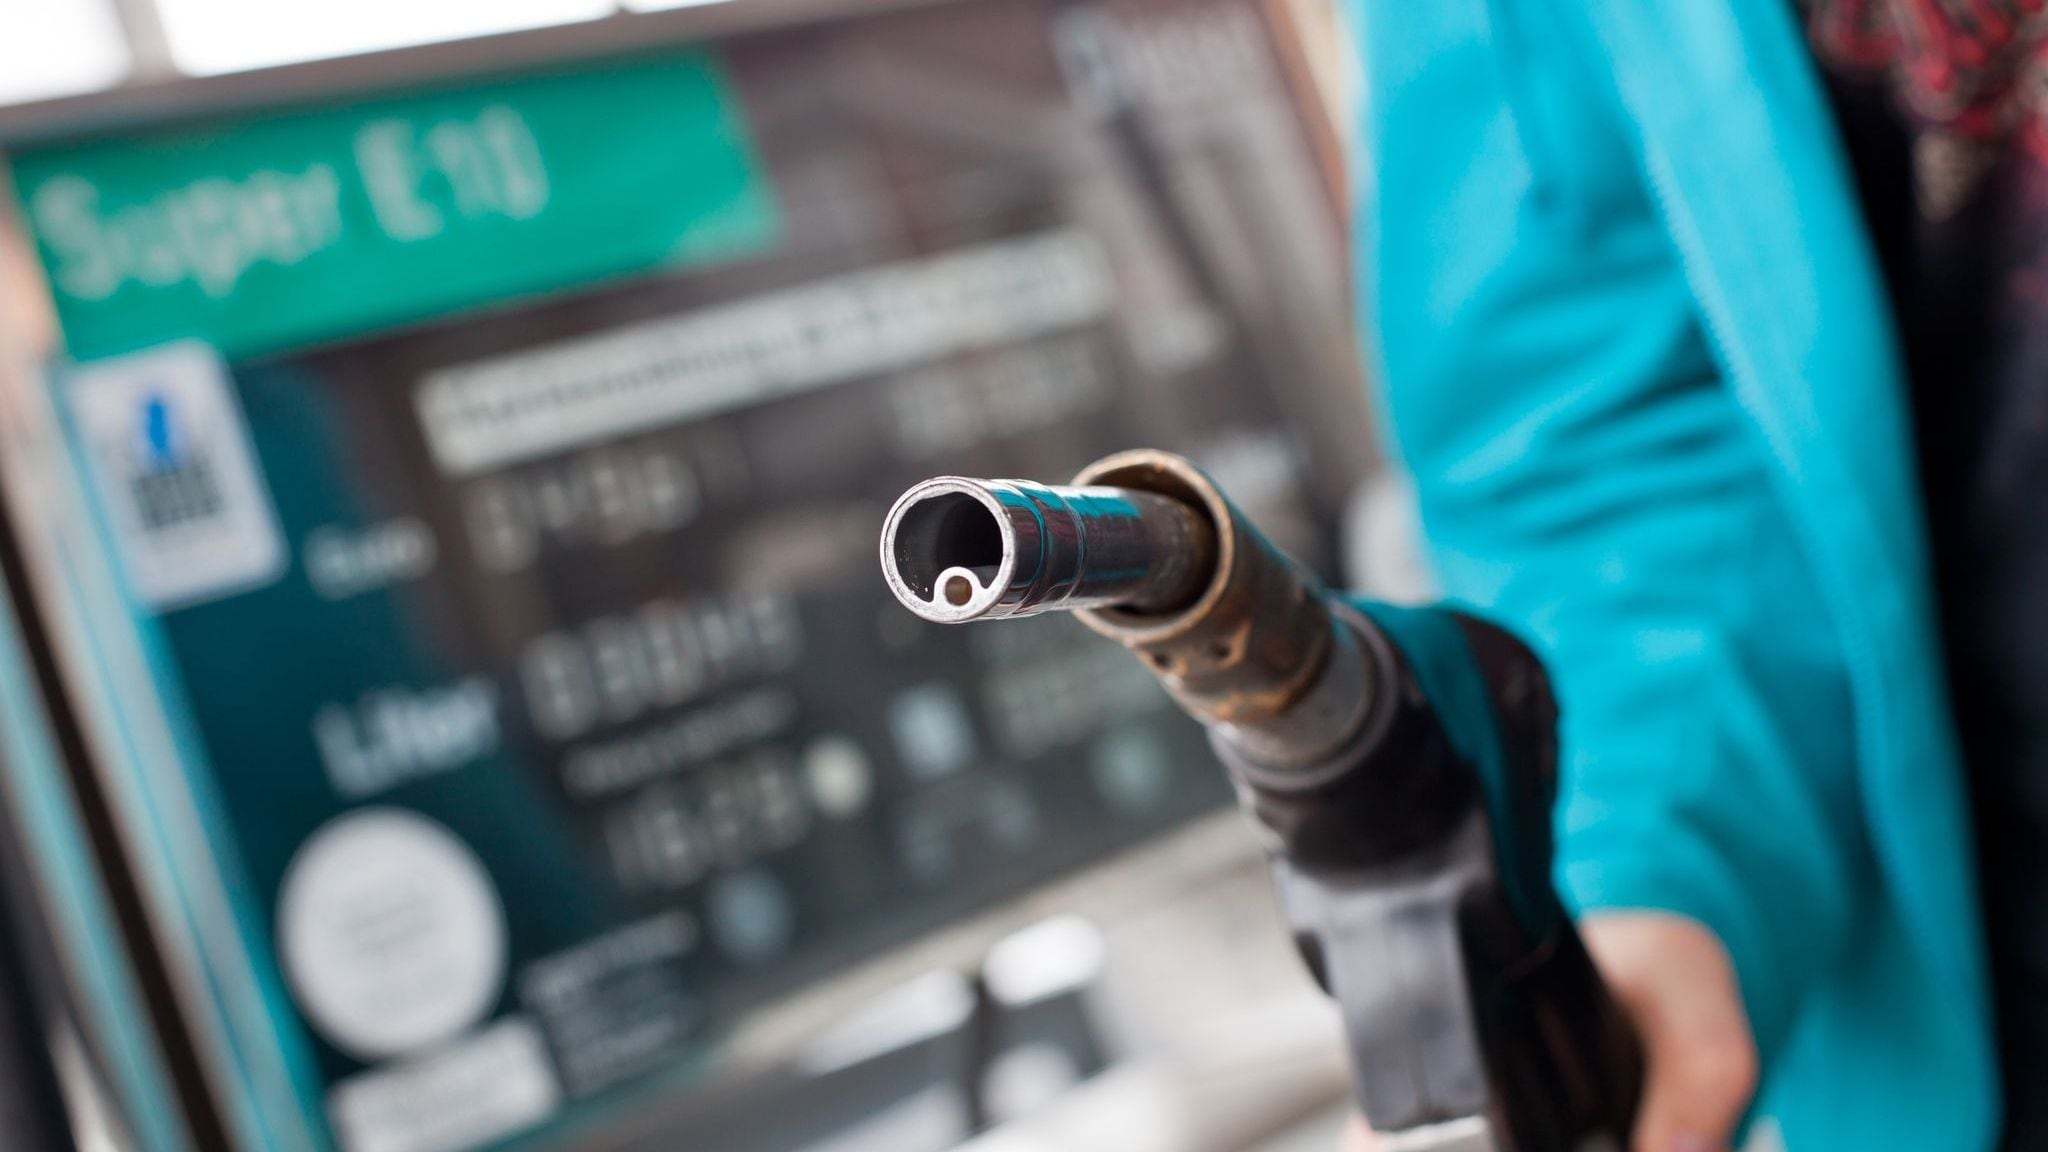 Los combustibles no tendrán más subas hasta luego de las elecciones (Foto: Daniel Karmann/dpa)